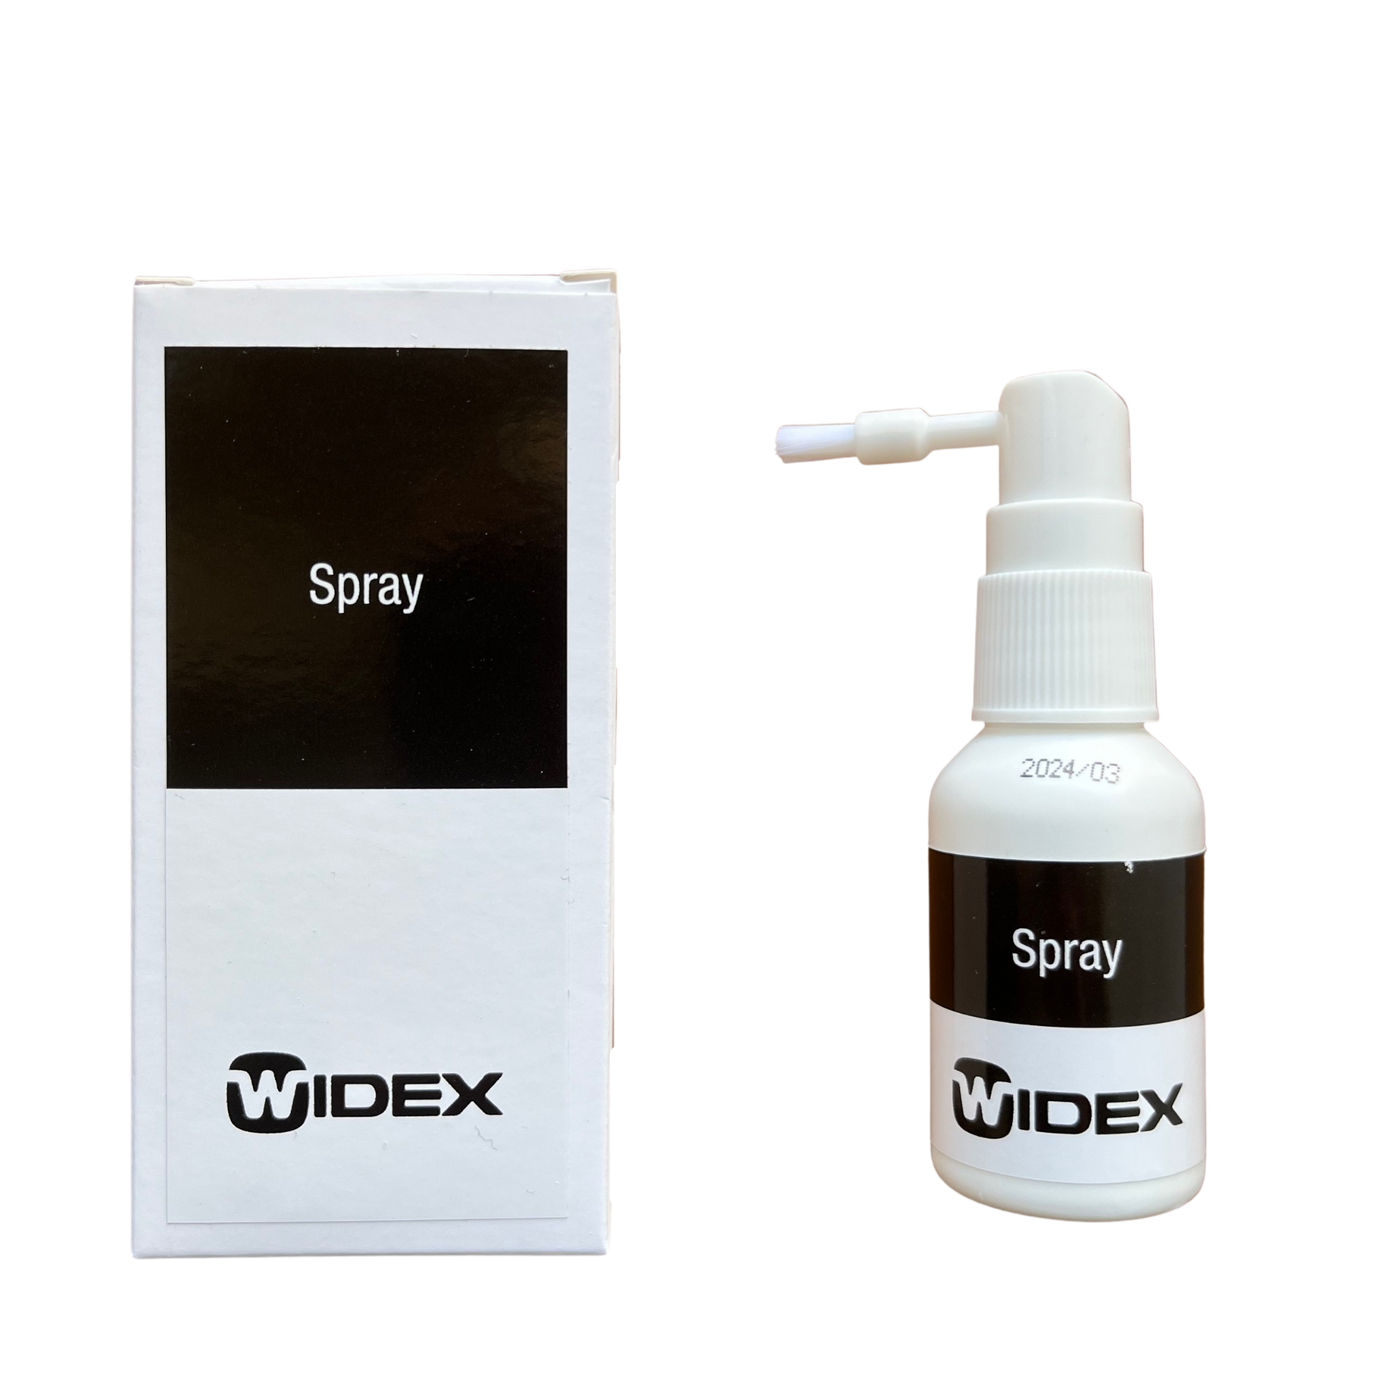 Rensespray med børste fra Widex